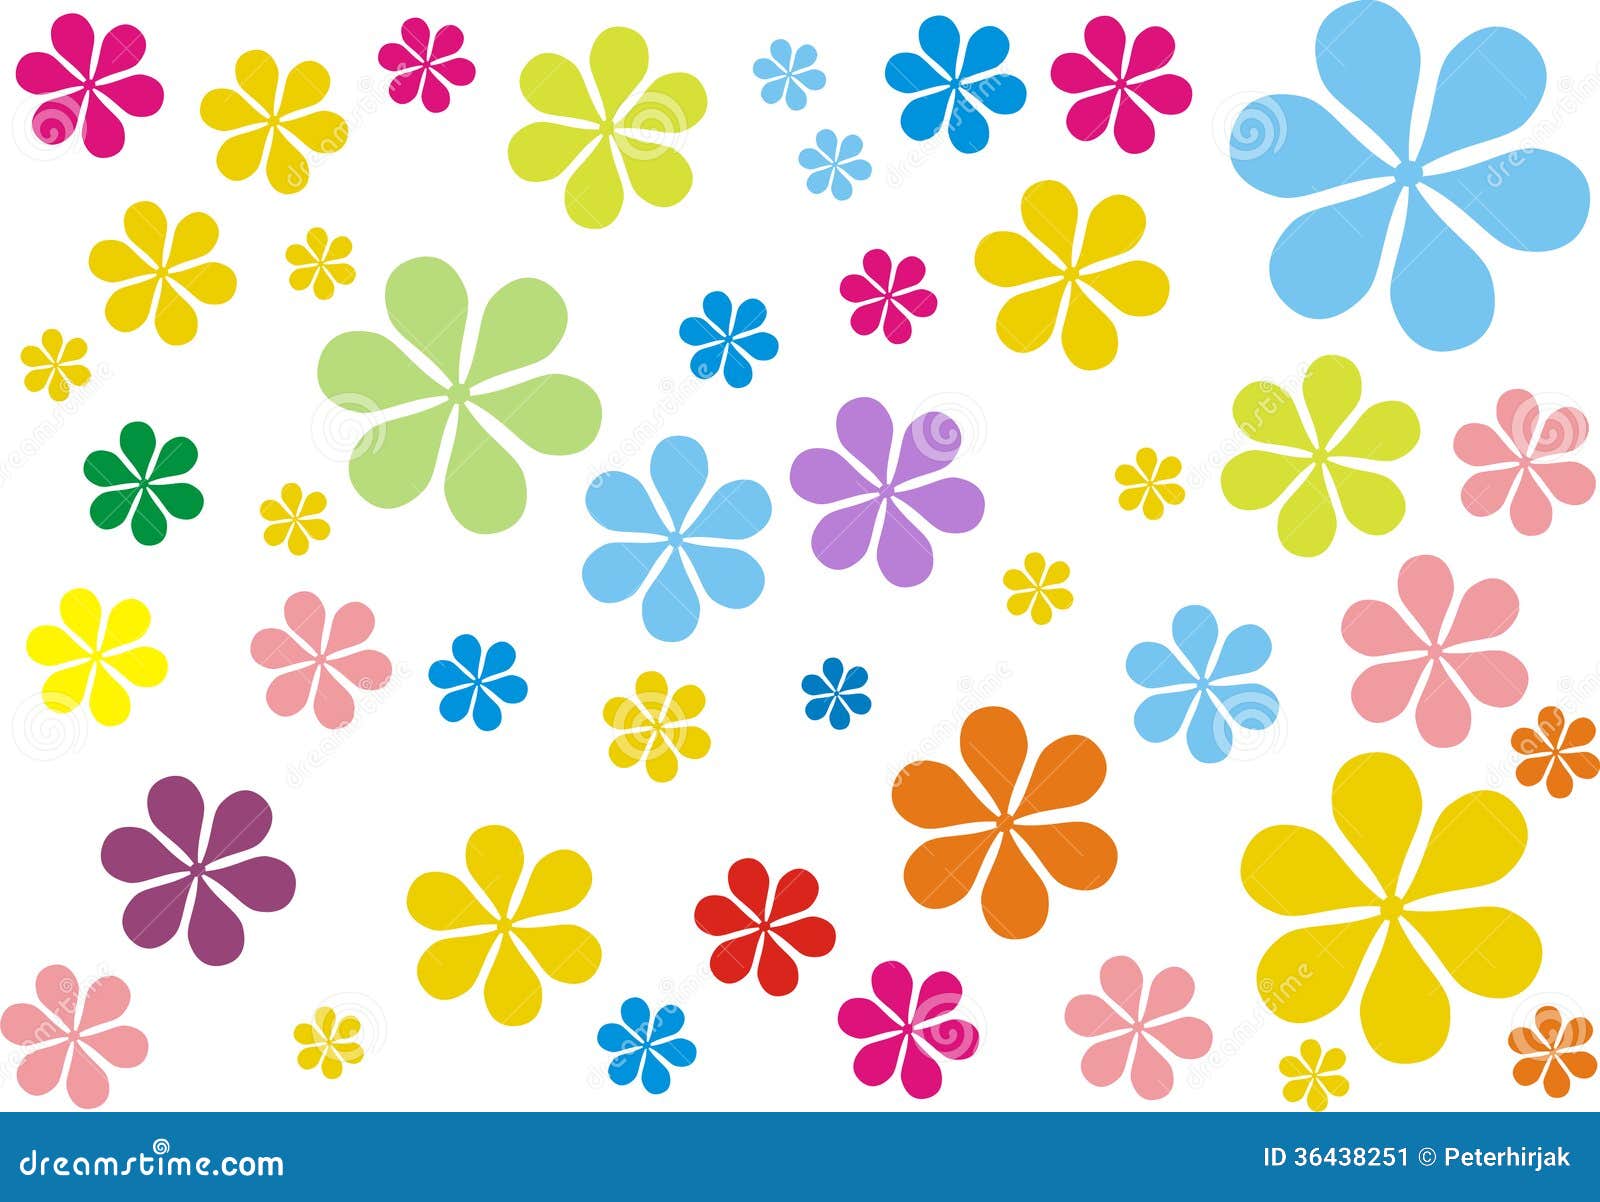 Flor retra - hippies stock de ilustración. Ilustración de flores - 36438251